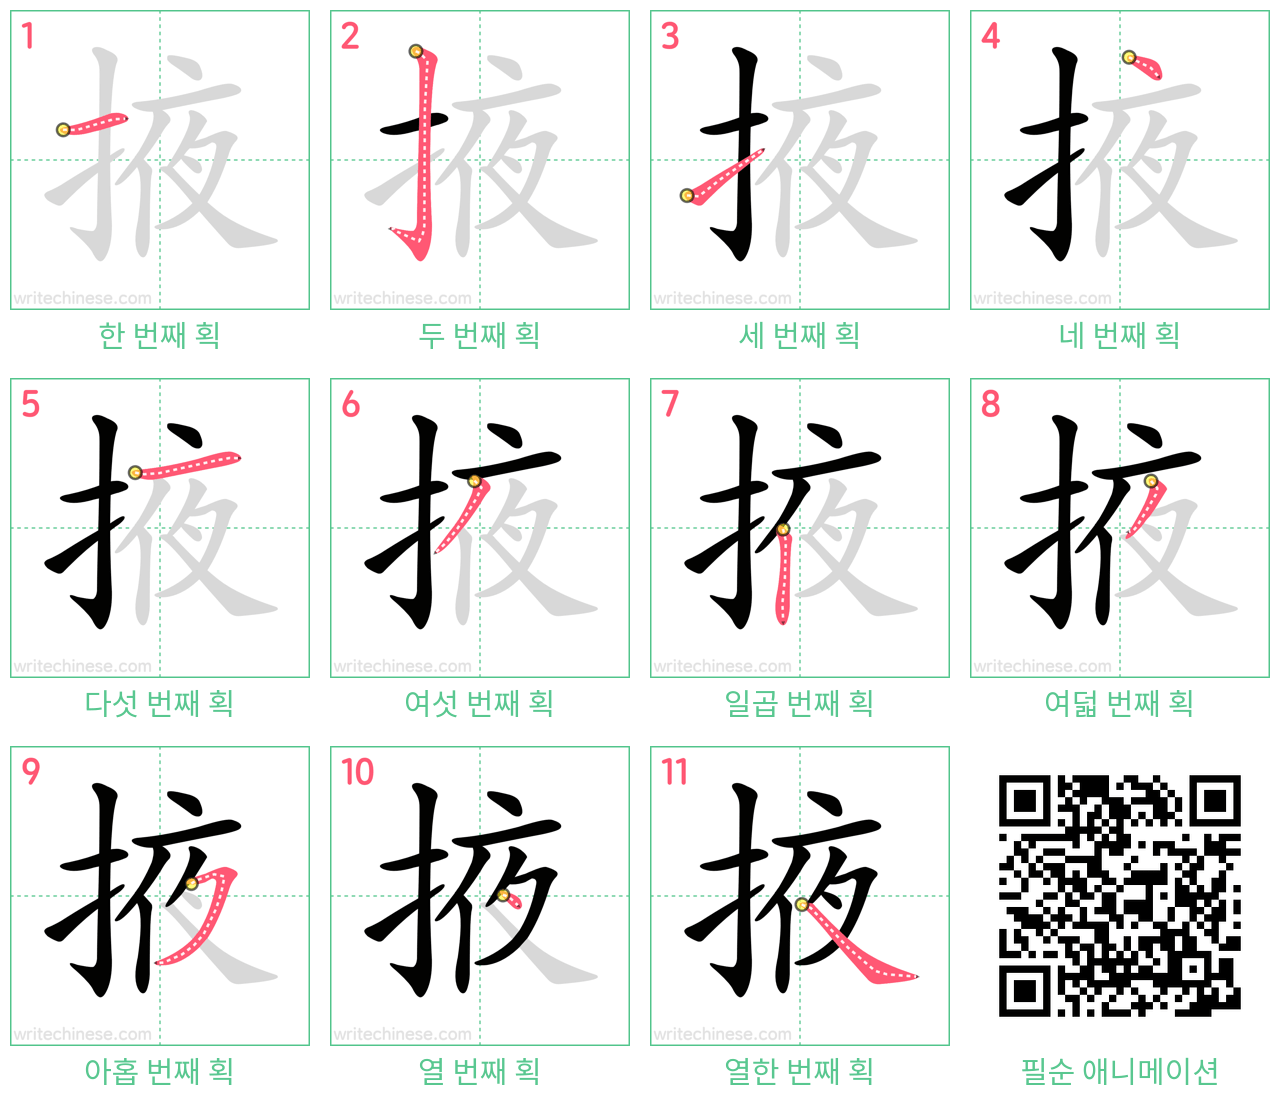 掖 step-by-step stroke order diagrams